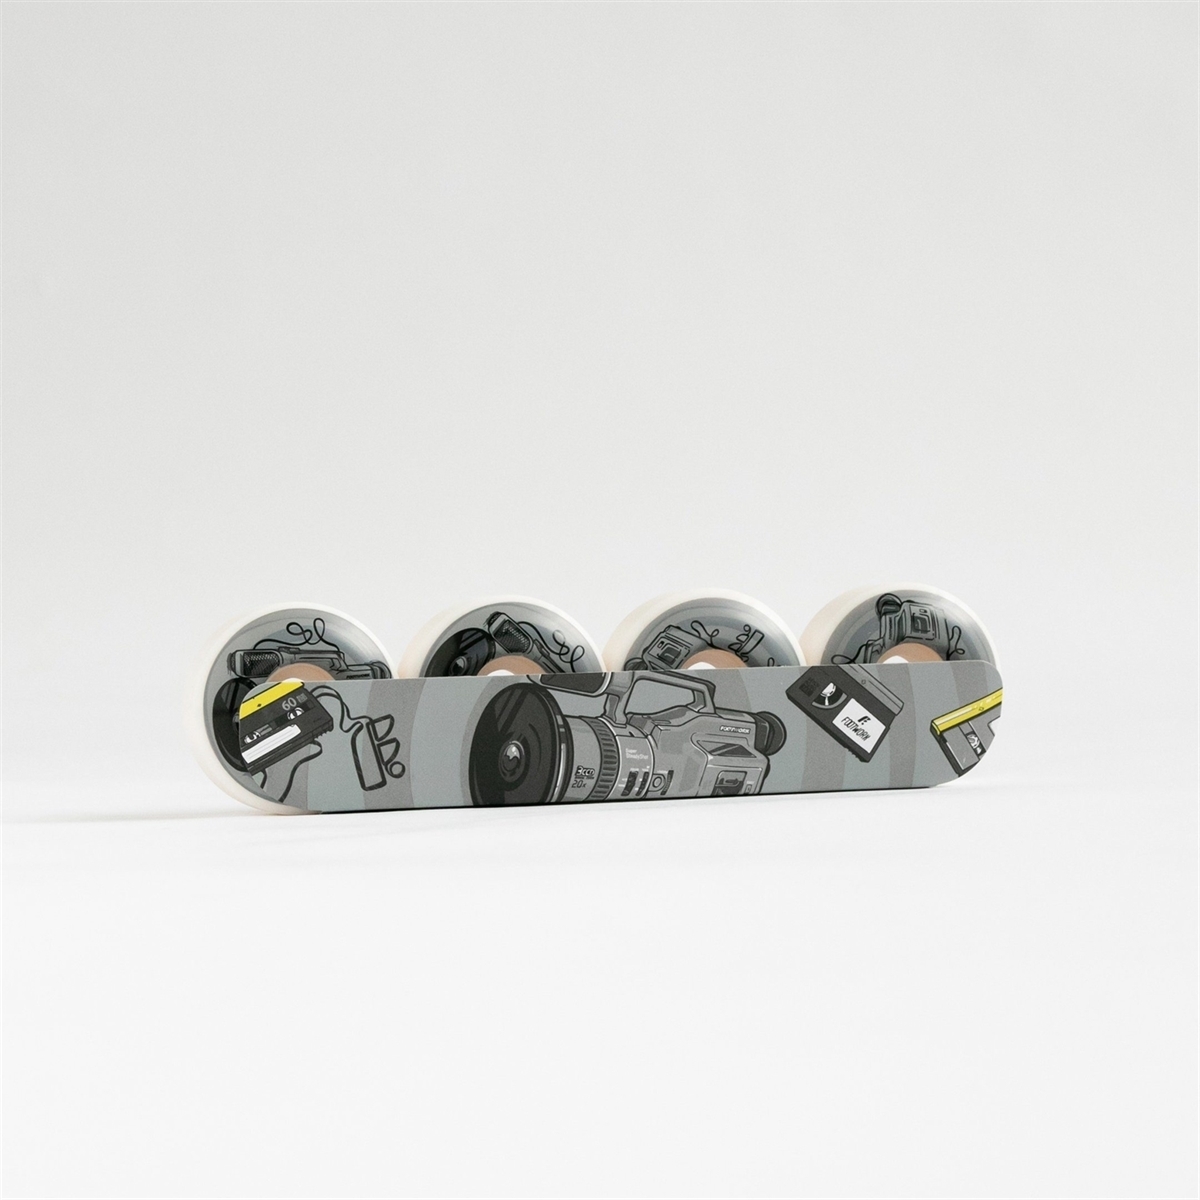 Комплект колес Footwork VX 1000 (54 мм 101A Форма Sidecut) - фото 20905